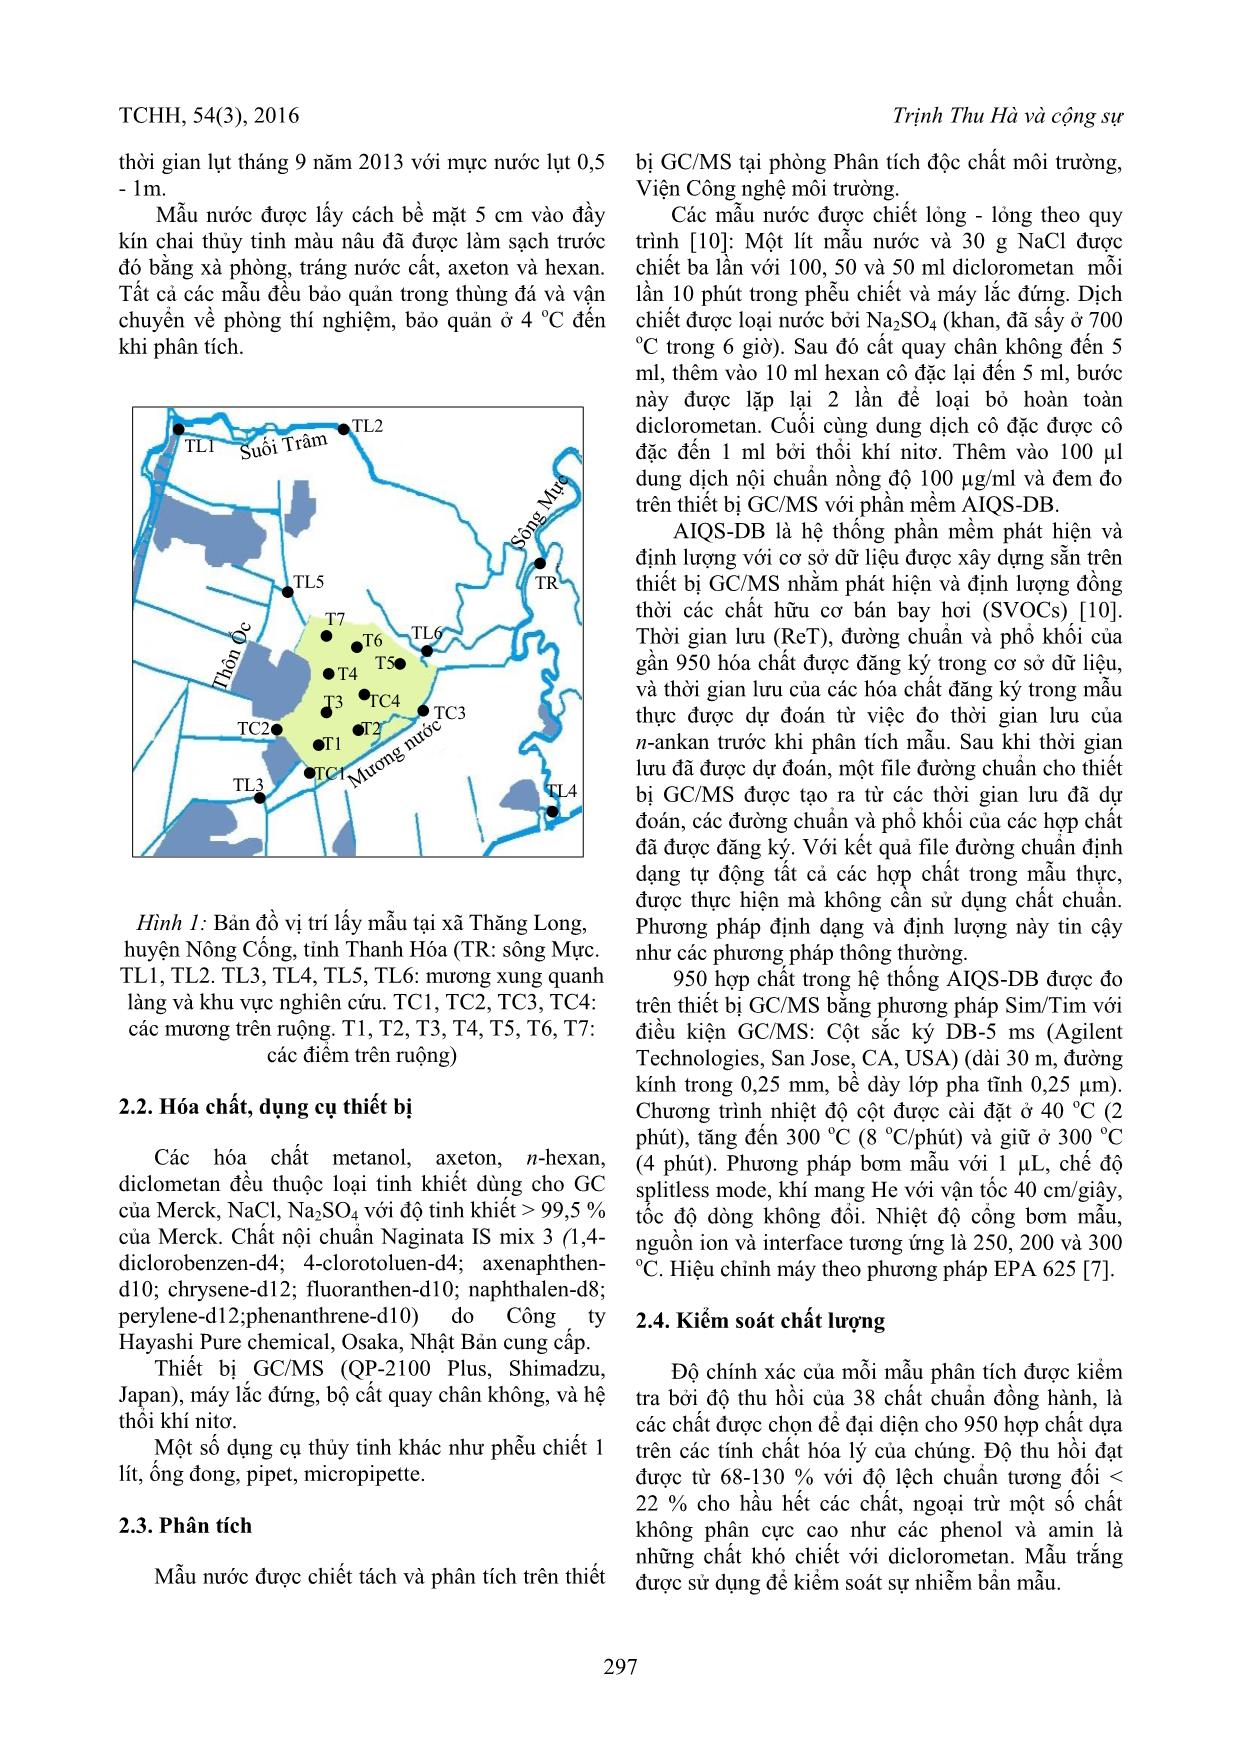 Phân tích đồng thời các chất ô nhiễm hữu cơ trong nước lụt miền Trung Việt Nam trang 2